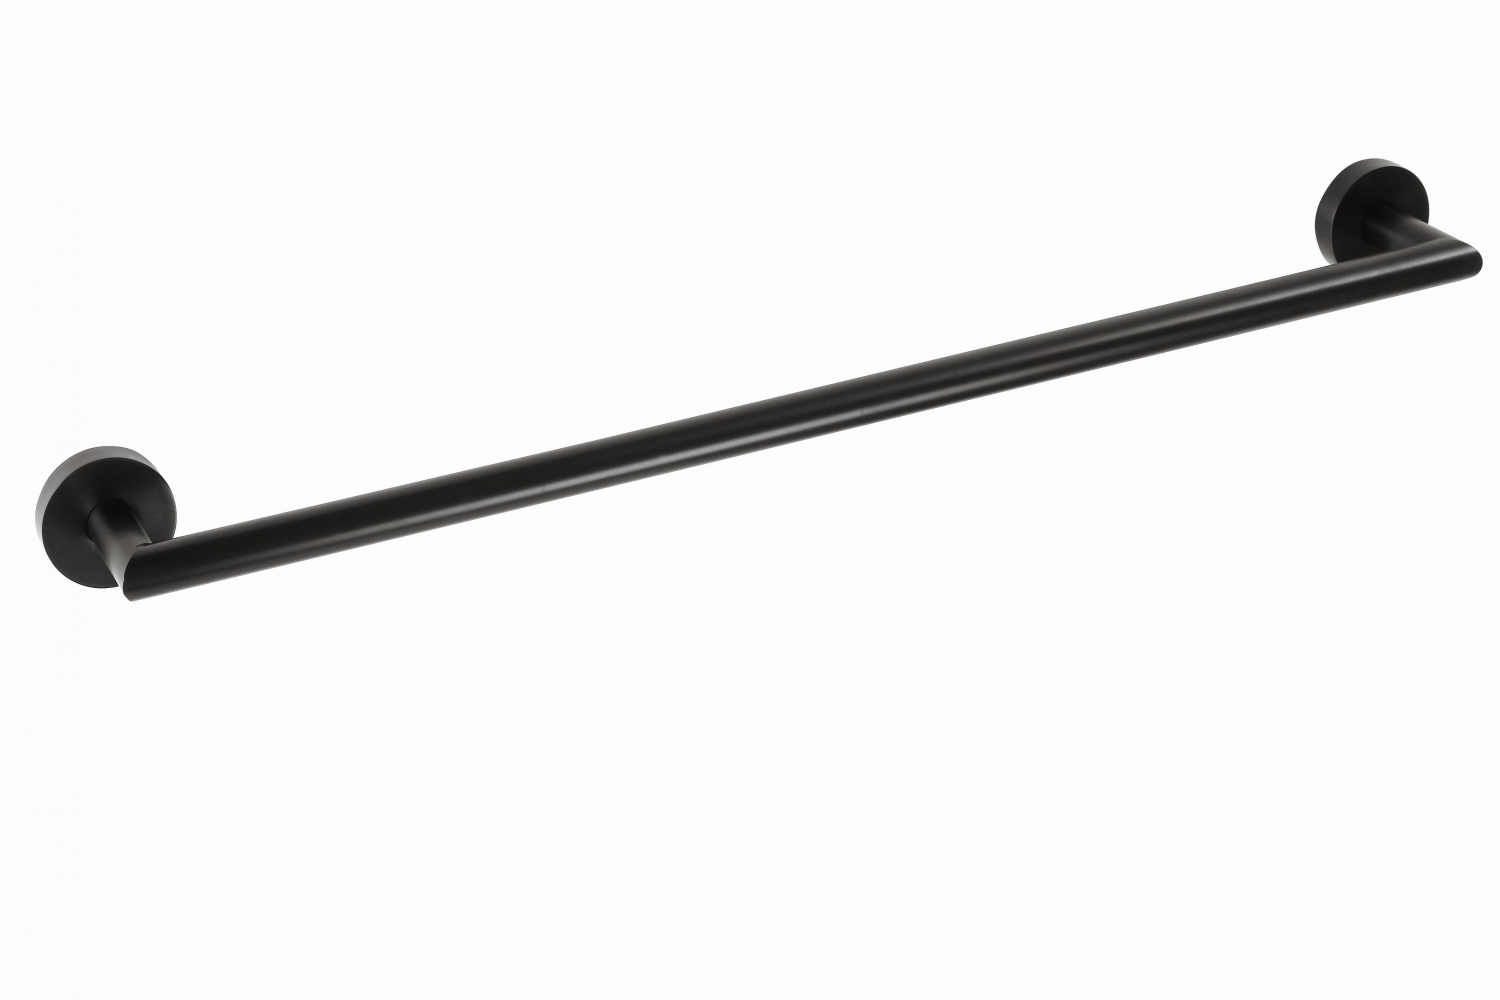 Handduksstång Black 65 cm, svart matt, Duschbyggarna